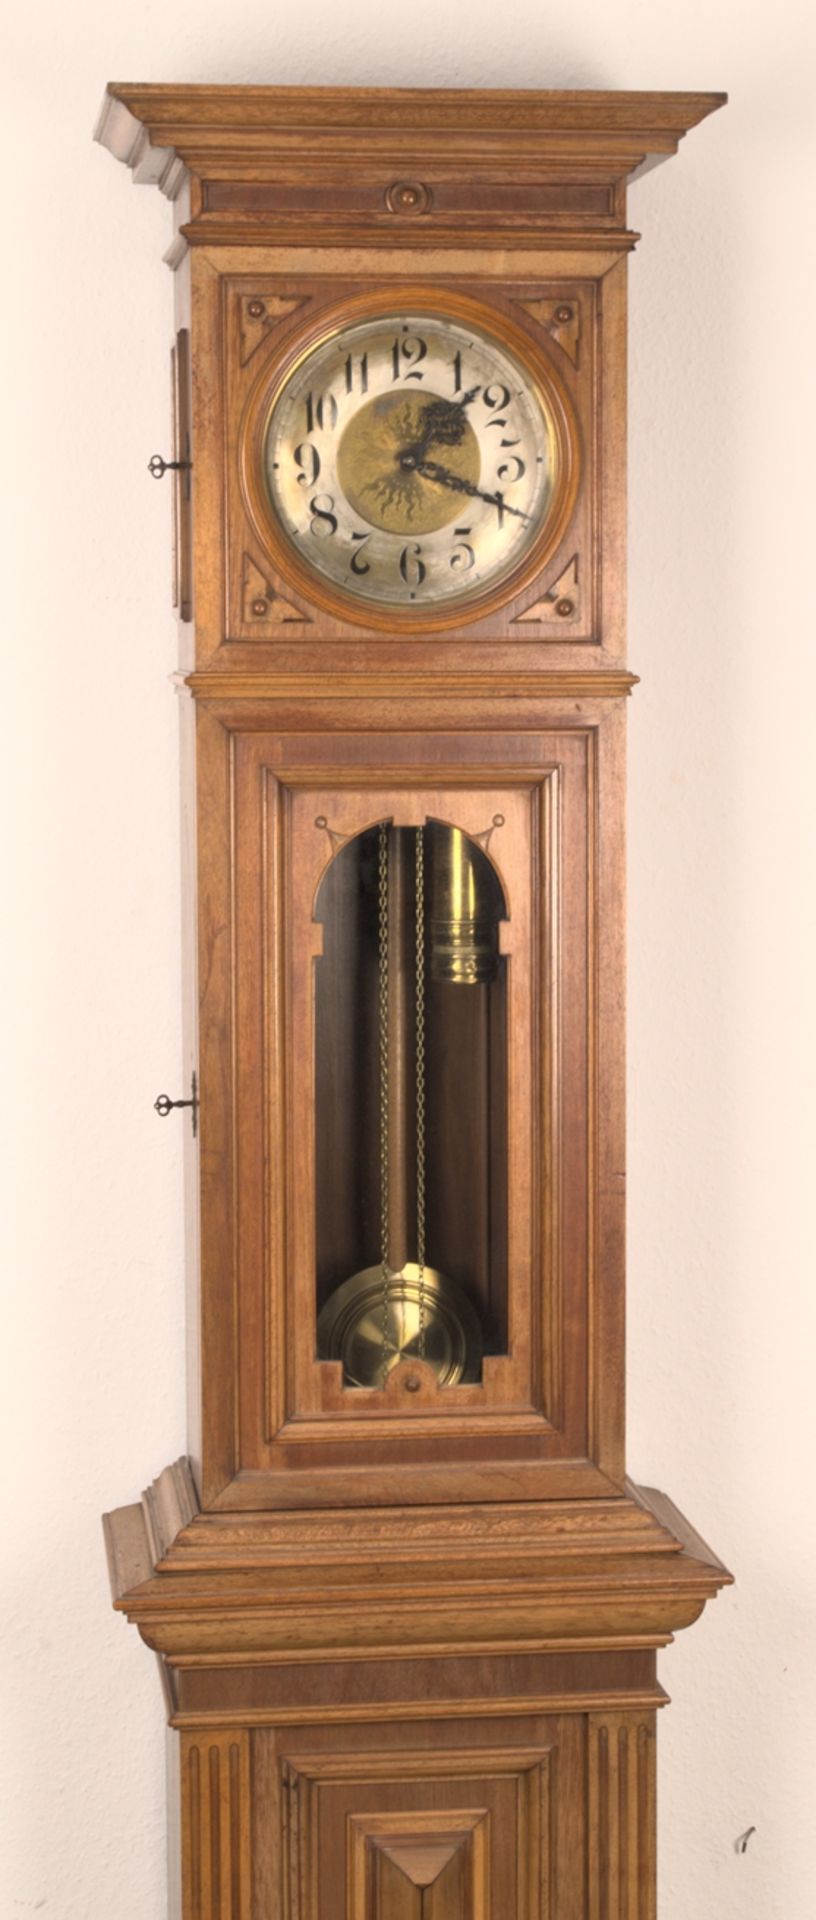 Antike Bodenstanduhr, Historismus um 1880/90, zweigewichtiges, ungeprüftes, mechanisches Uhrwerk der - Bild 2 aus 27